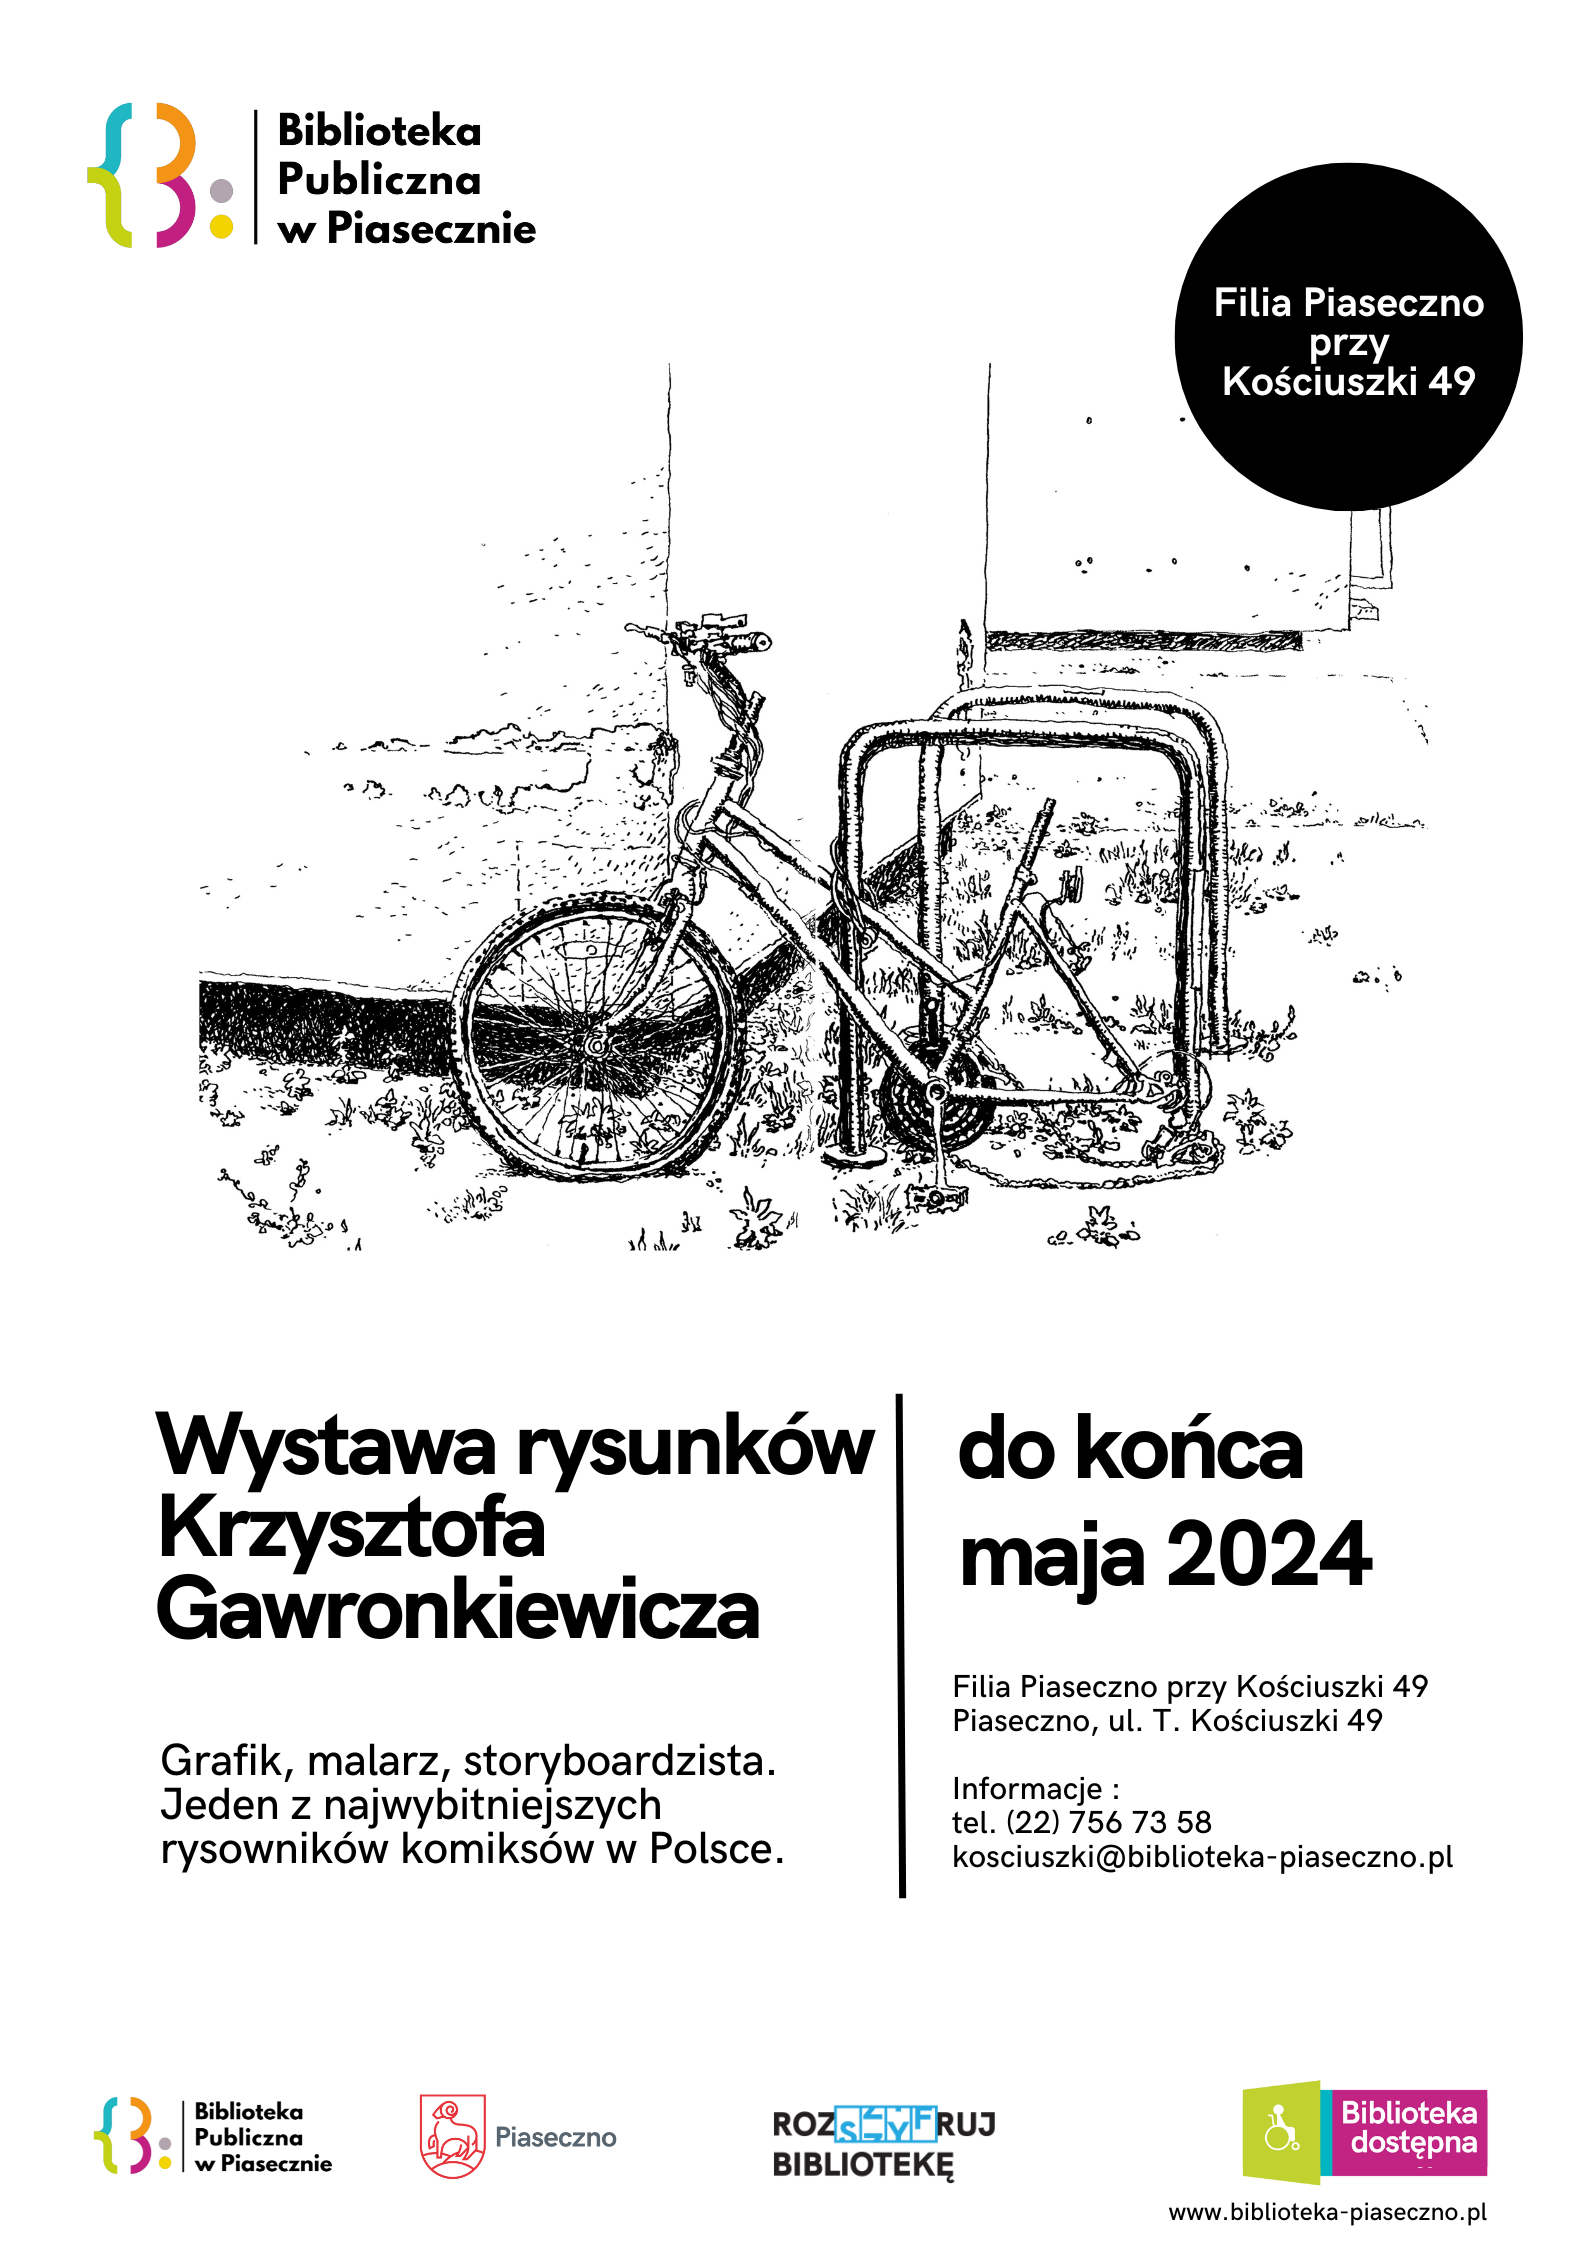 Plakat promujący wystawę rysunków Krzysztofa Gawronkiewicza